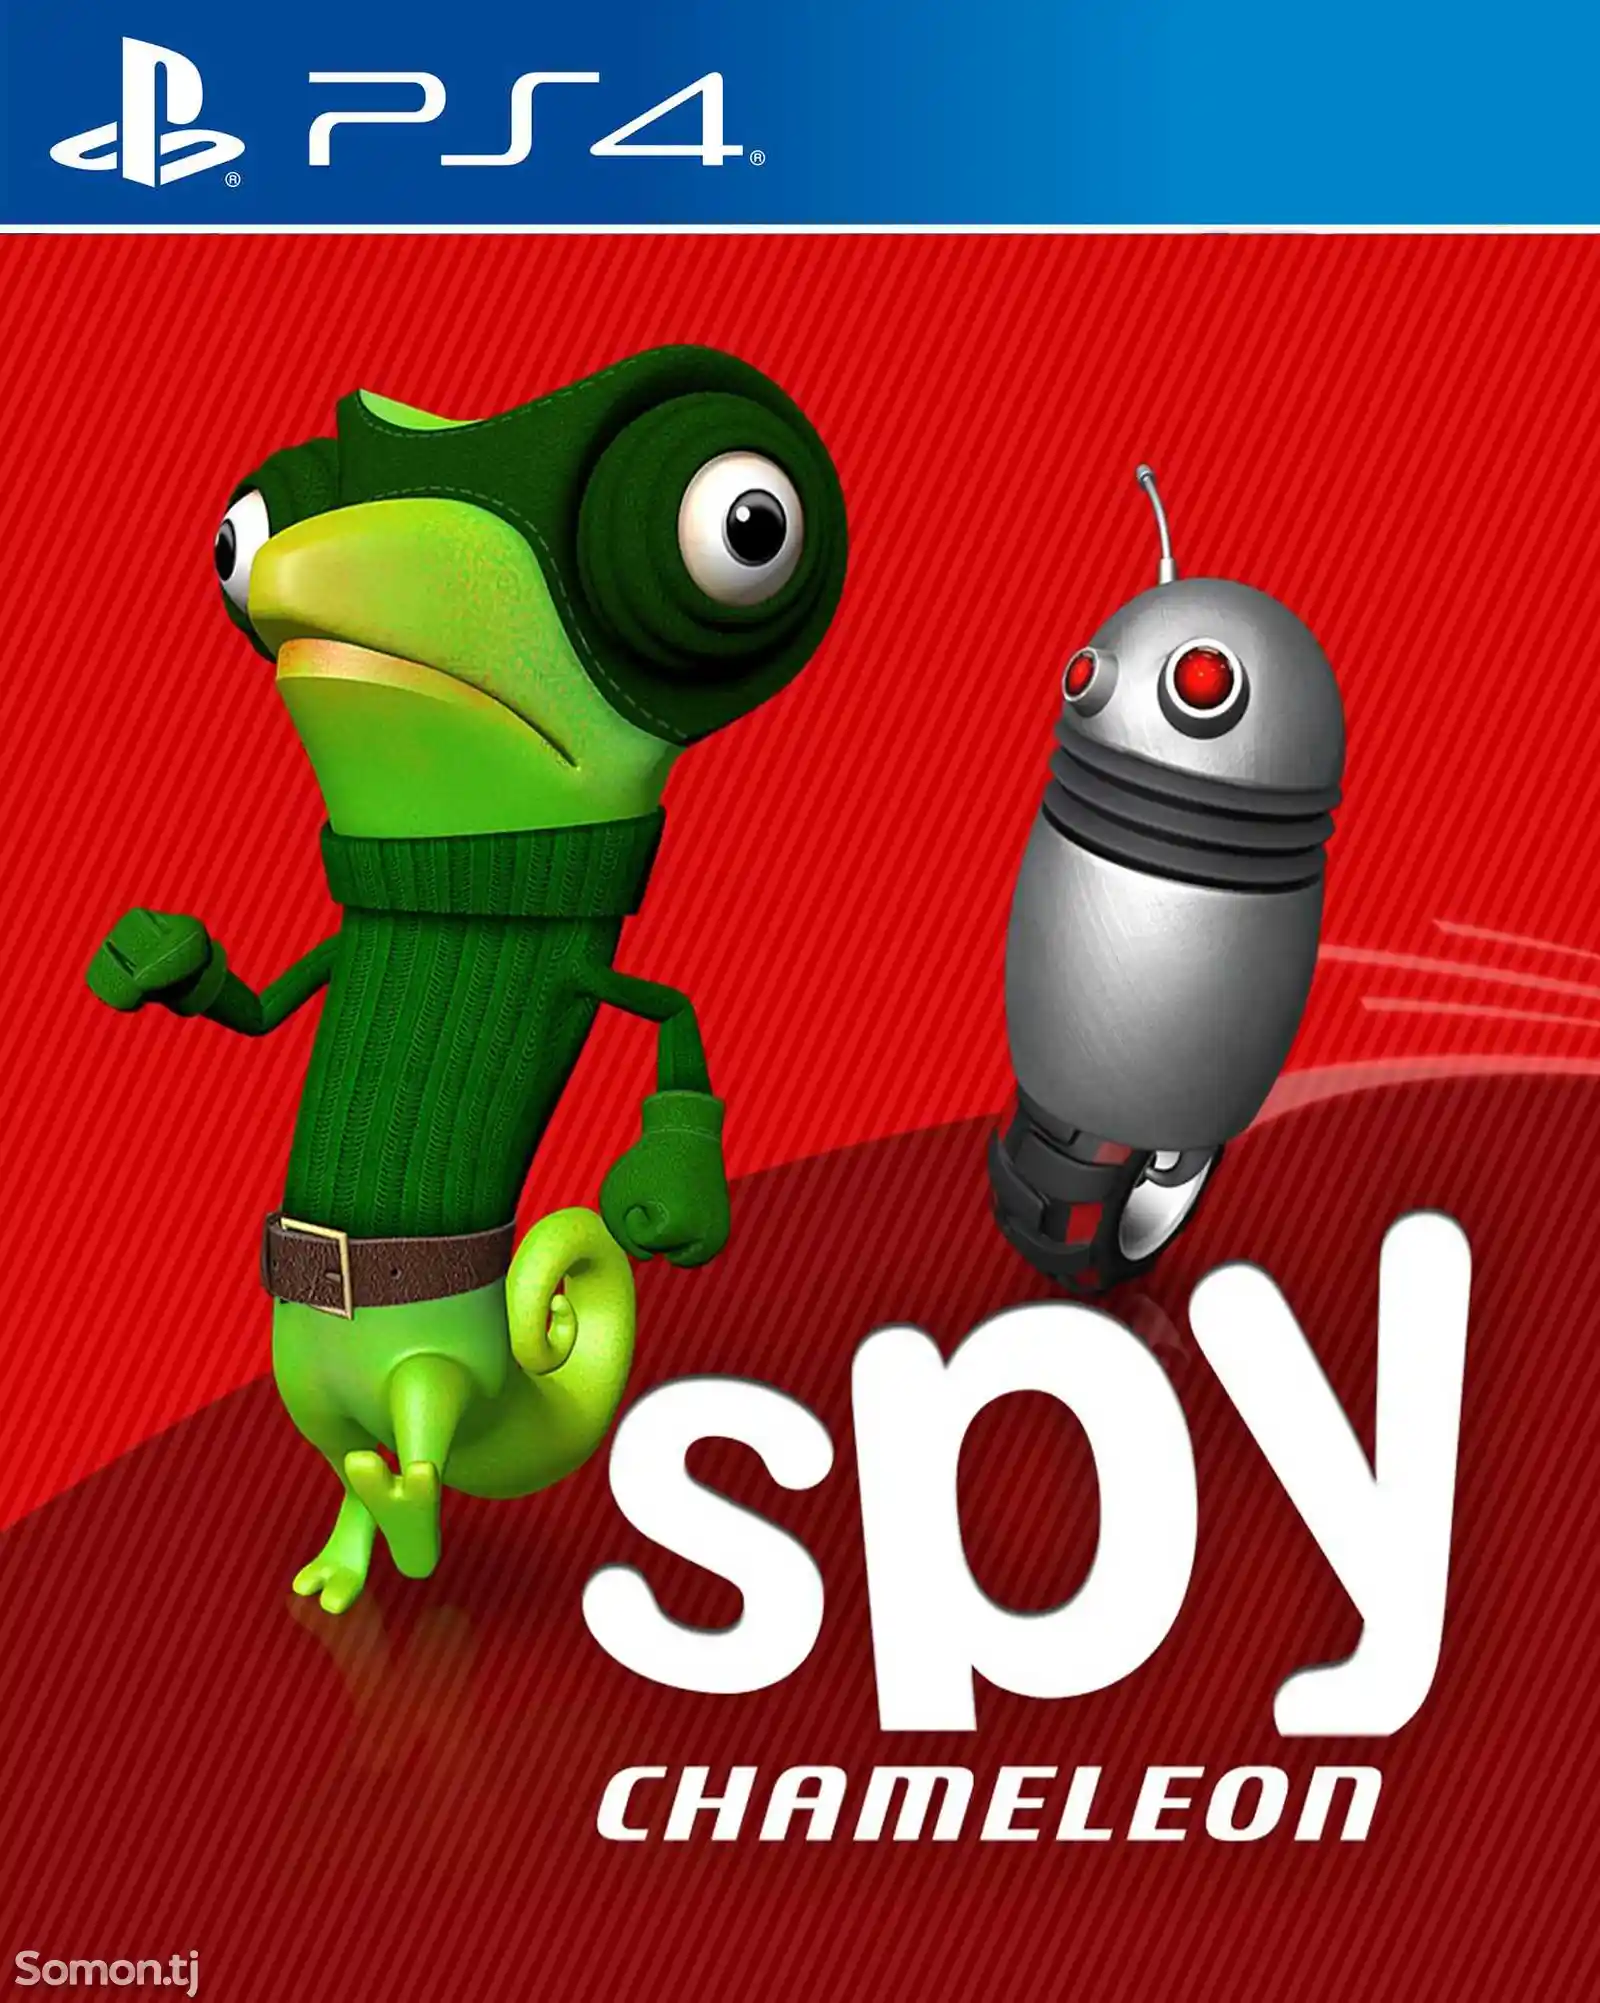 Игра Spy chameleon для PS-4 / 5.05 / 6.72 / 7.02 / 7.55 / 9.00 /-1